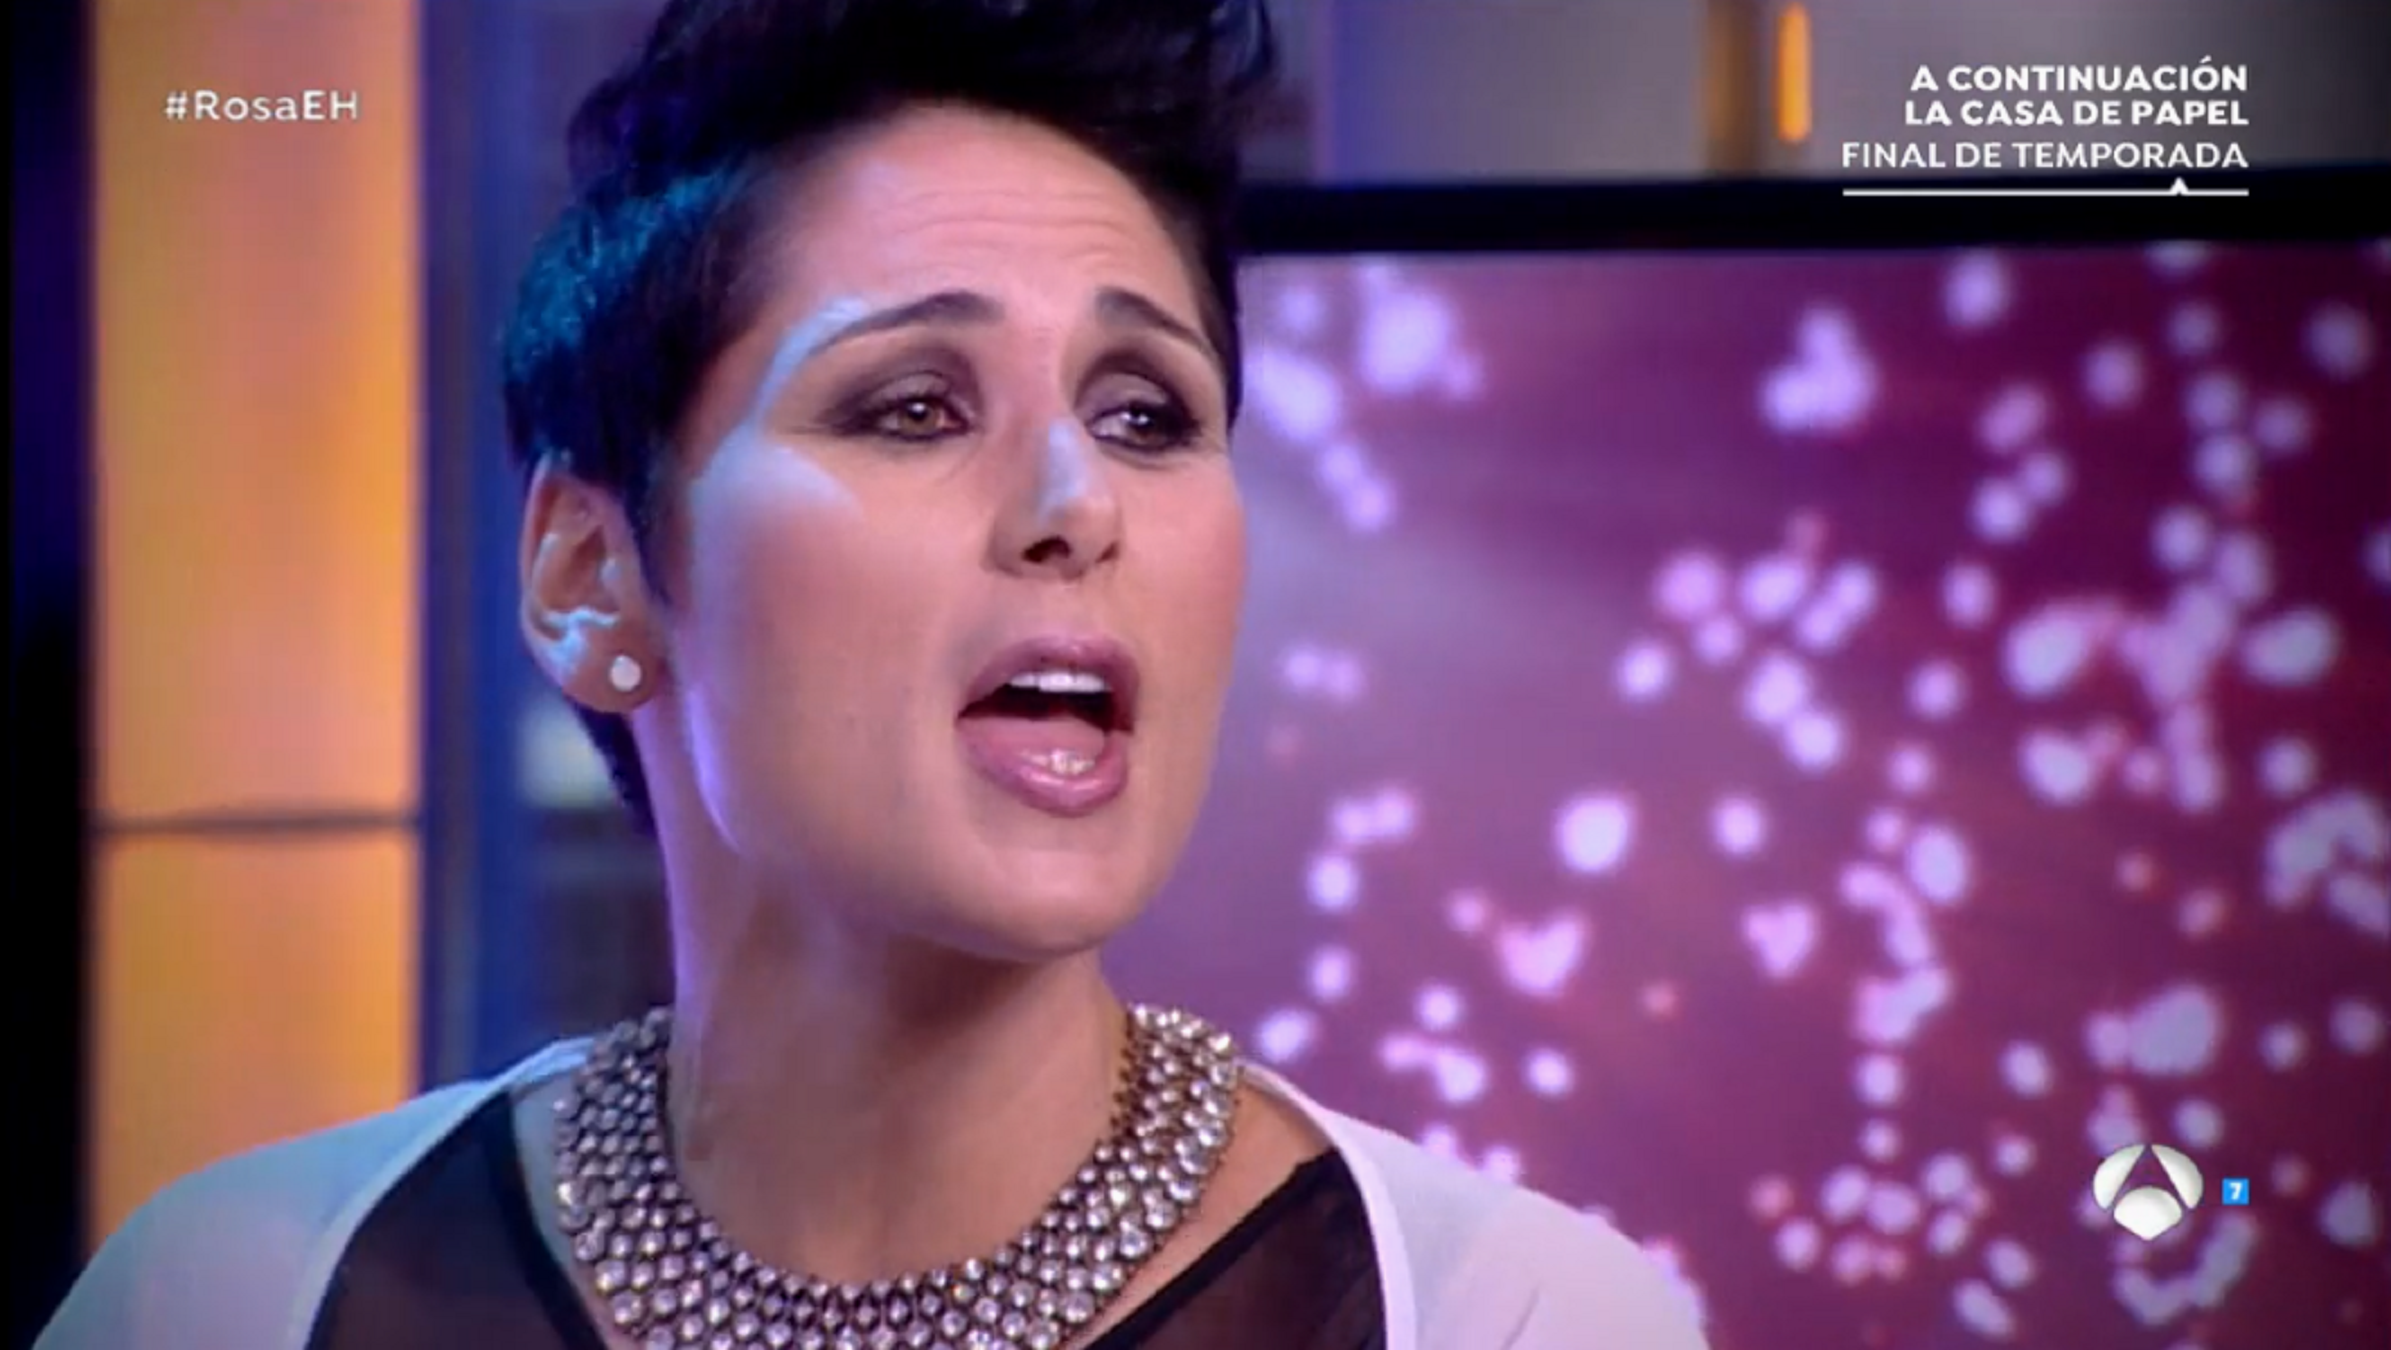 Rosa López fa una versió de la cançó d'Eurovisió i queda en evidència